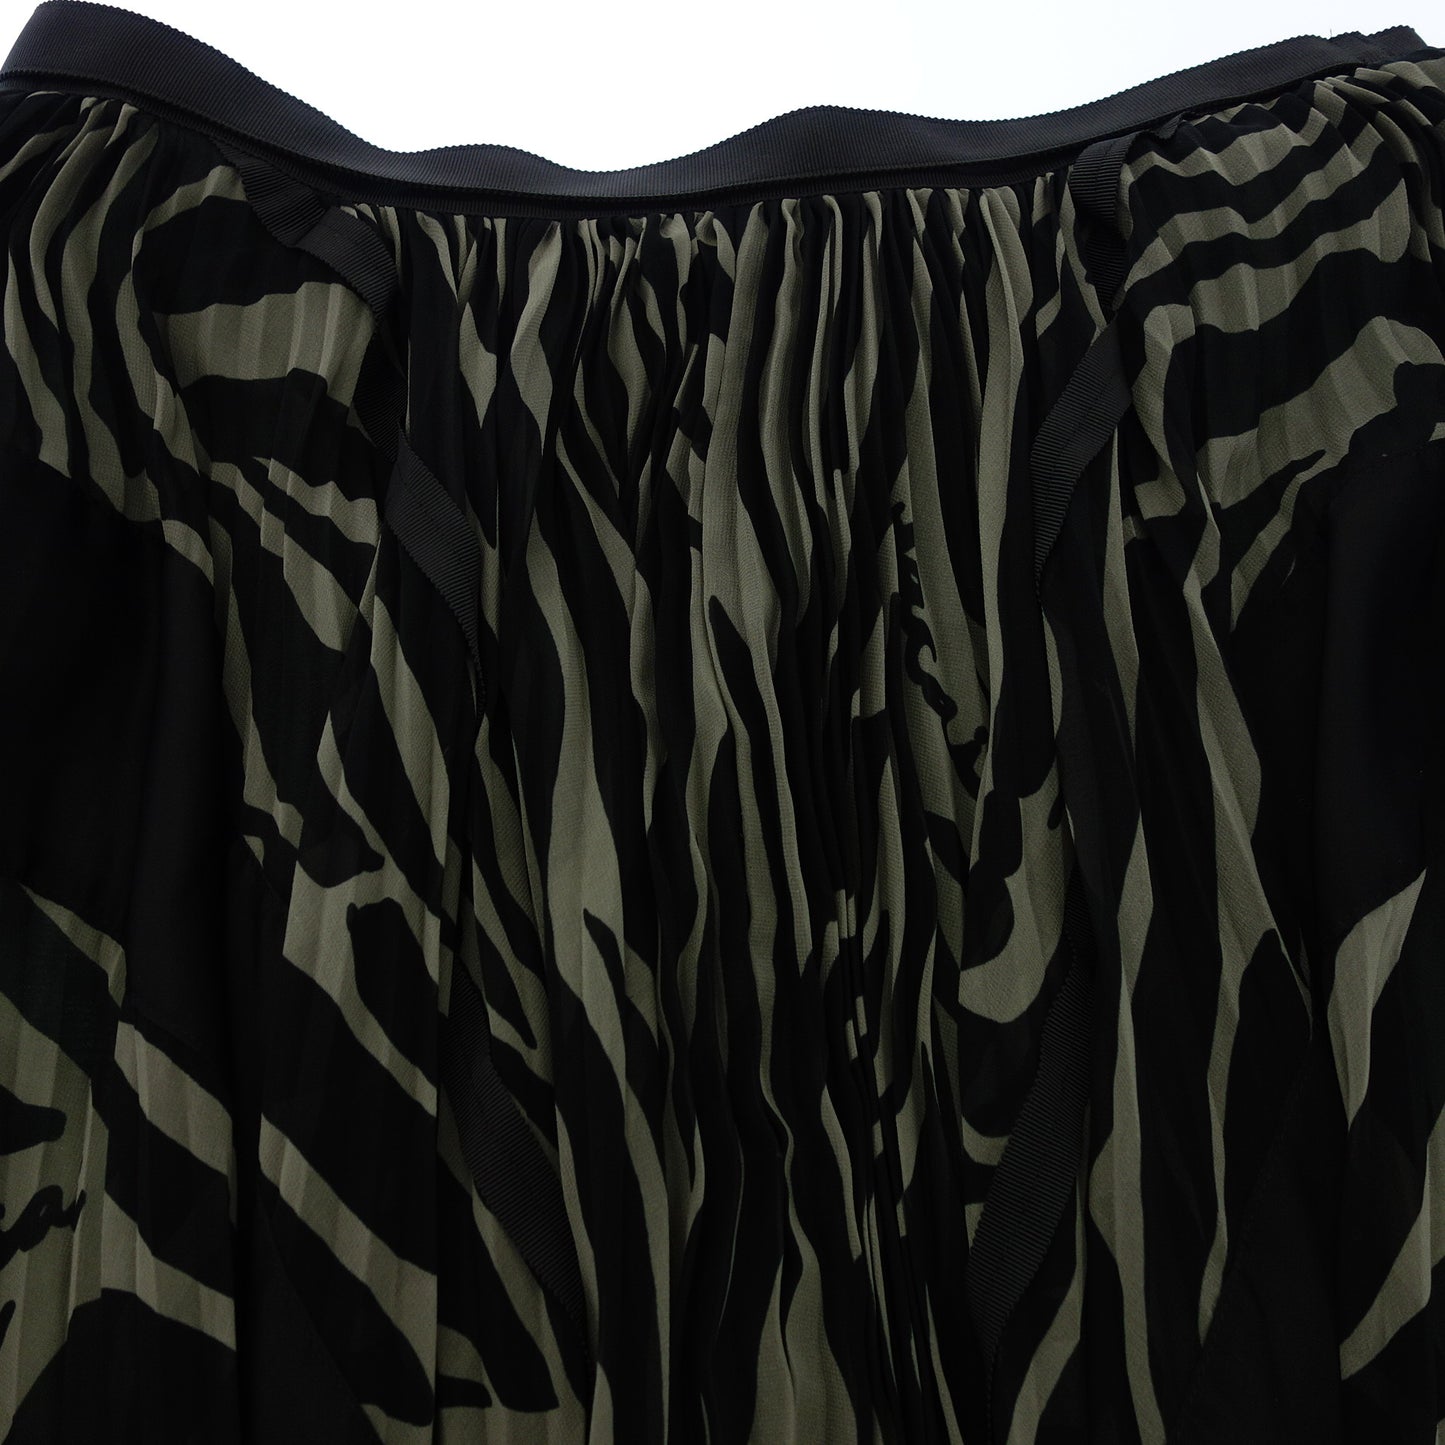 状况良好◆Sacai 裹身裙全身图案 20-04918 尺寸 2 女士黑色 sacai [AFB20] 